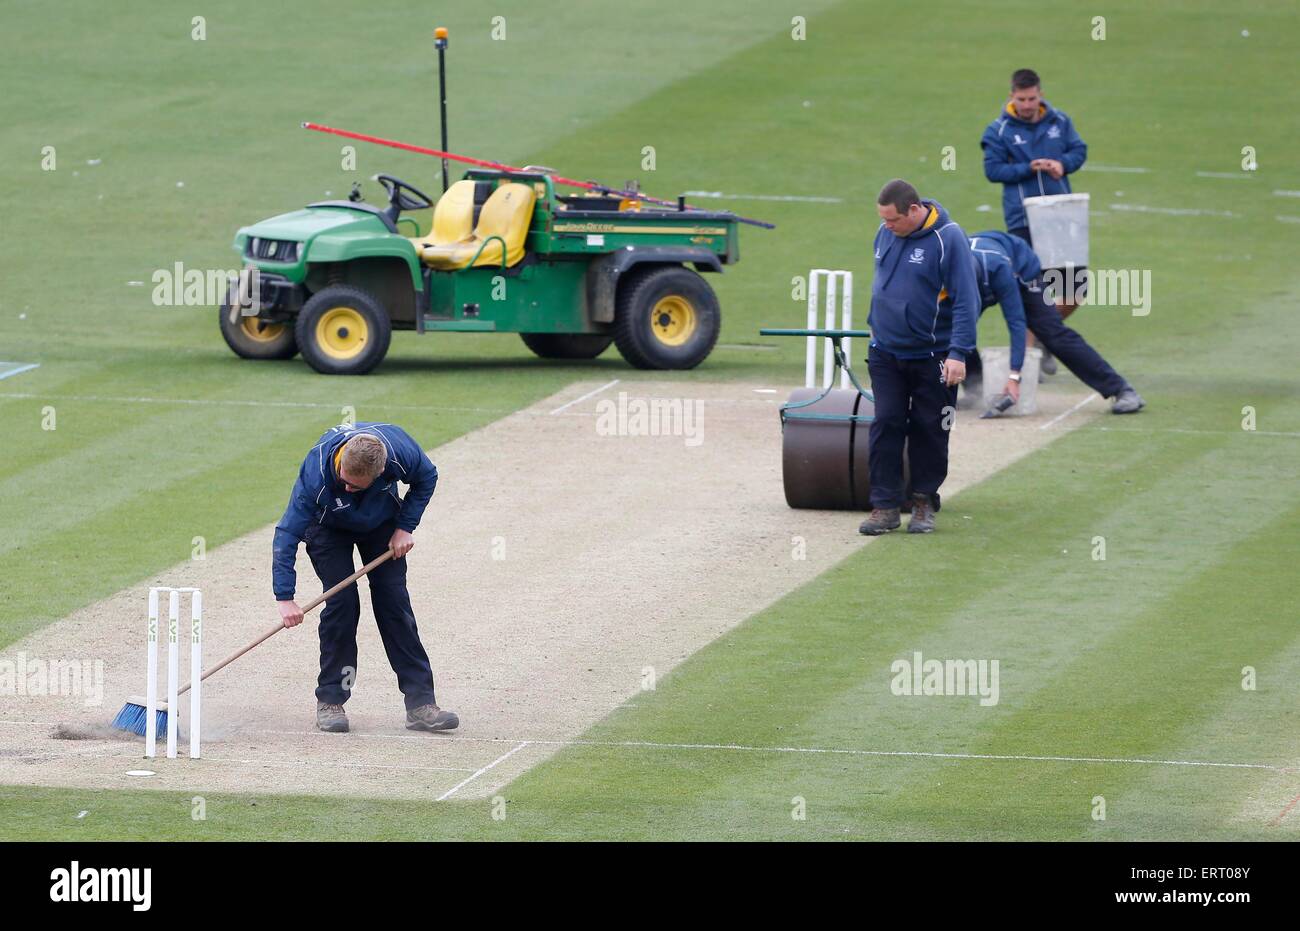 Un groundsman et son équipe préparent un cricket wicket. Banque D'Images